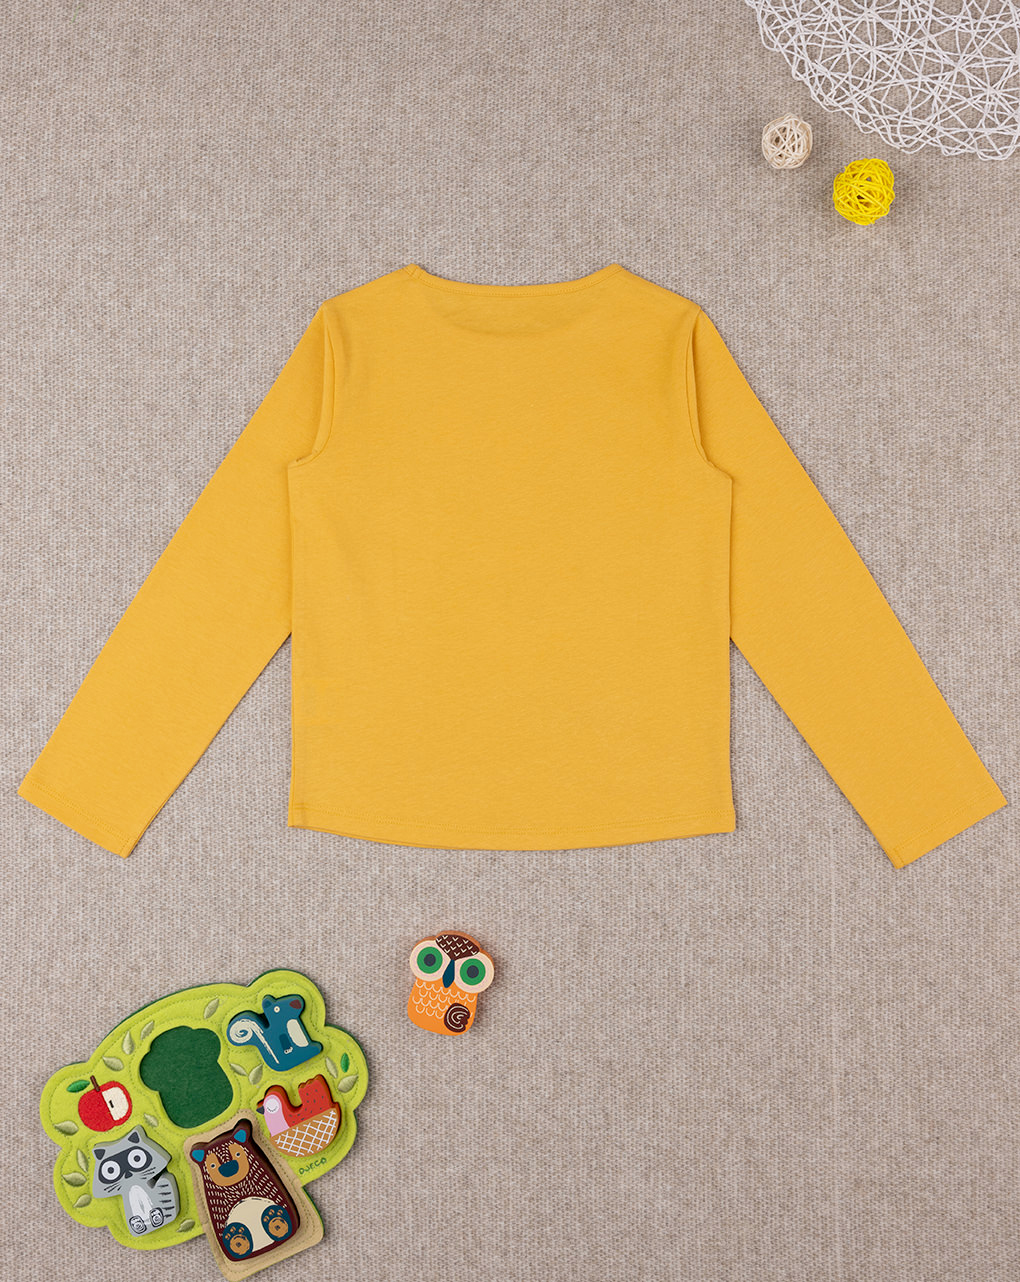 παιδική μπλούζα κίτρινη με κουκουβάγια για κορίτσι - Prénatal